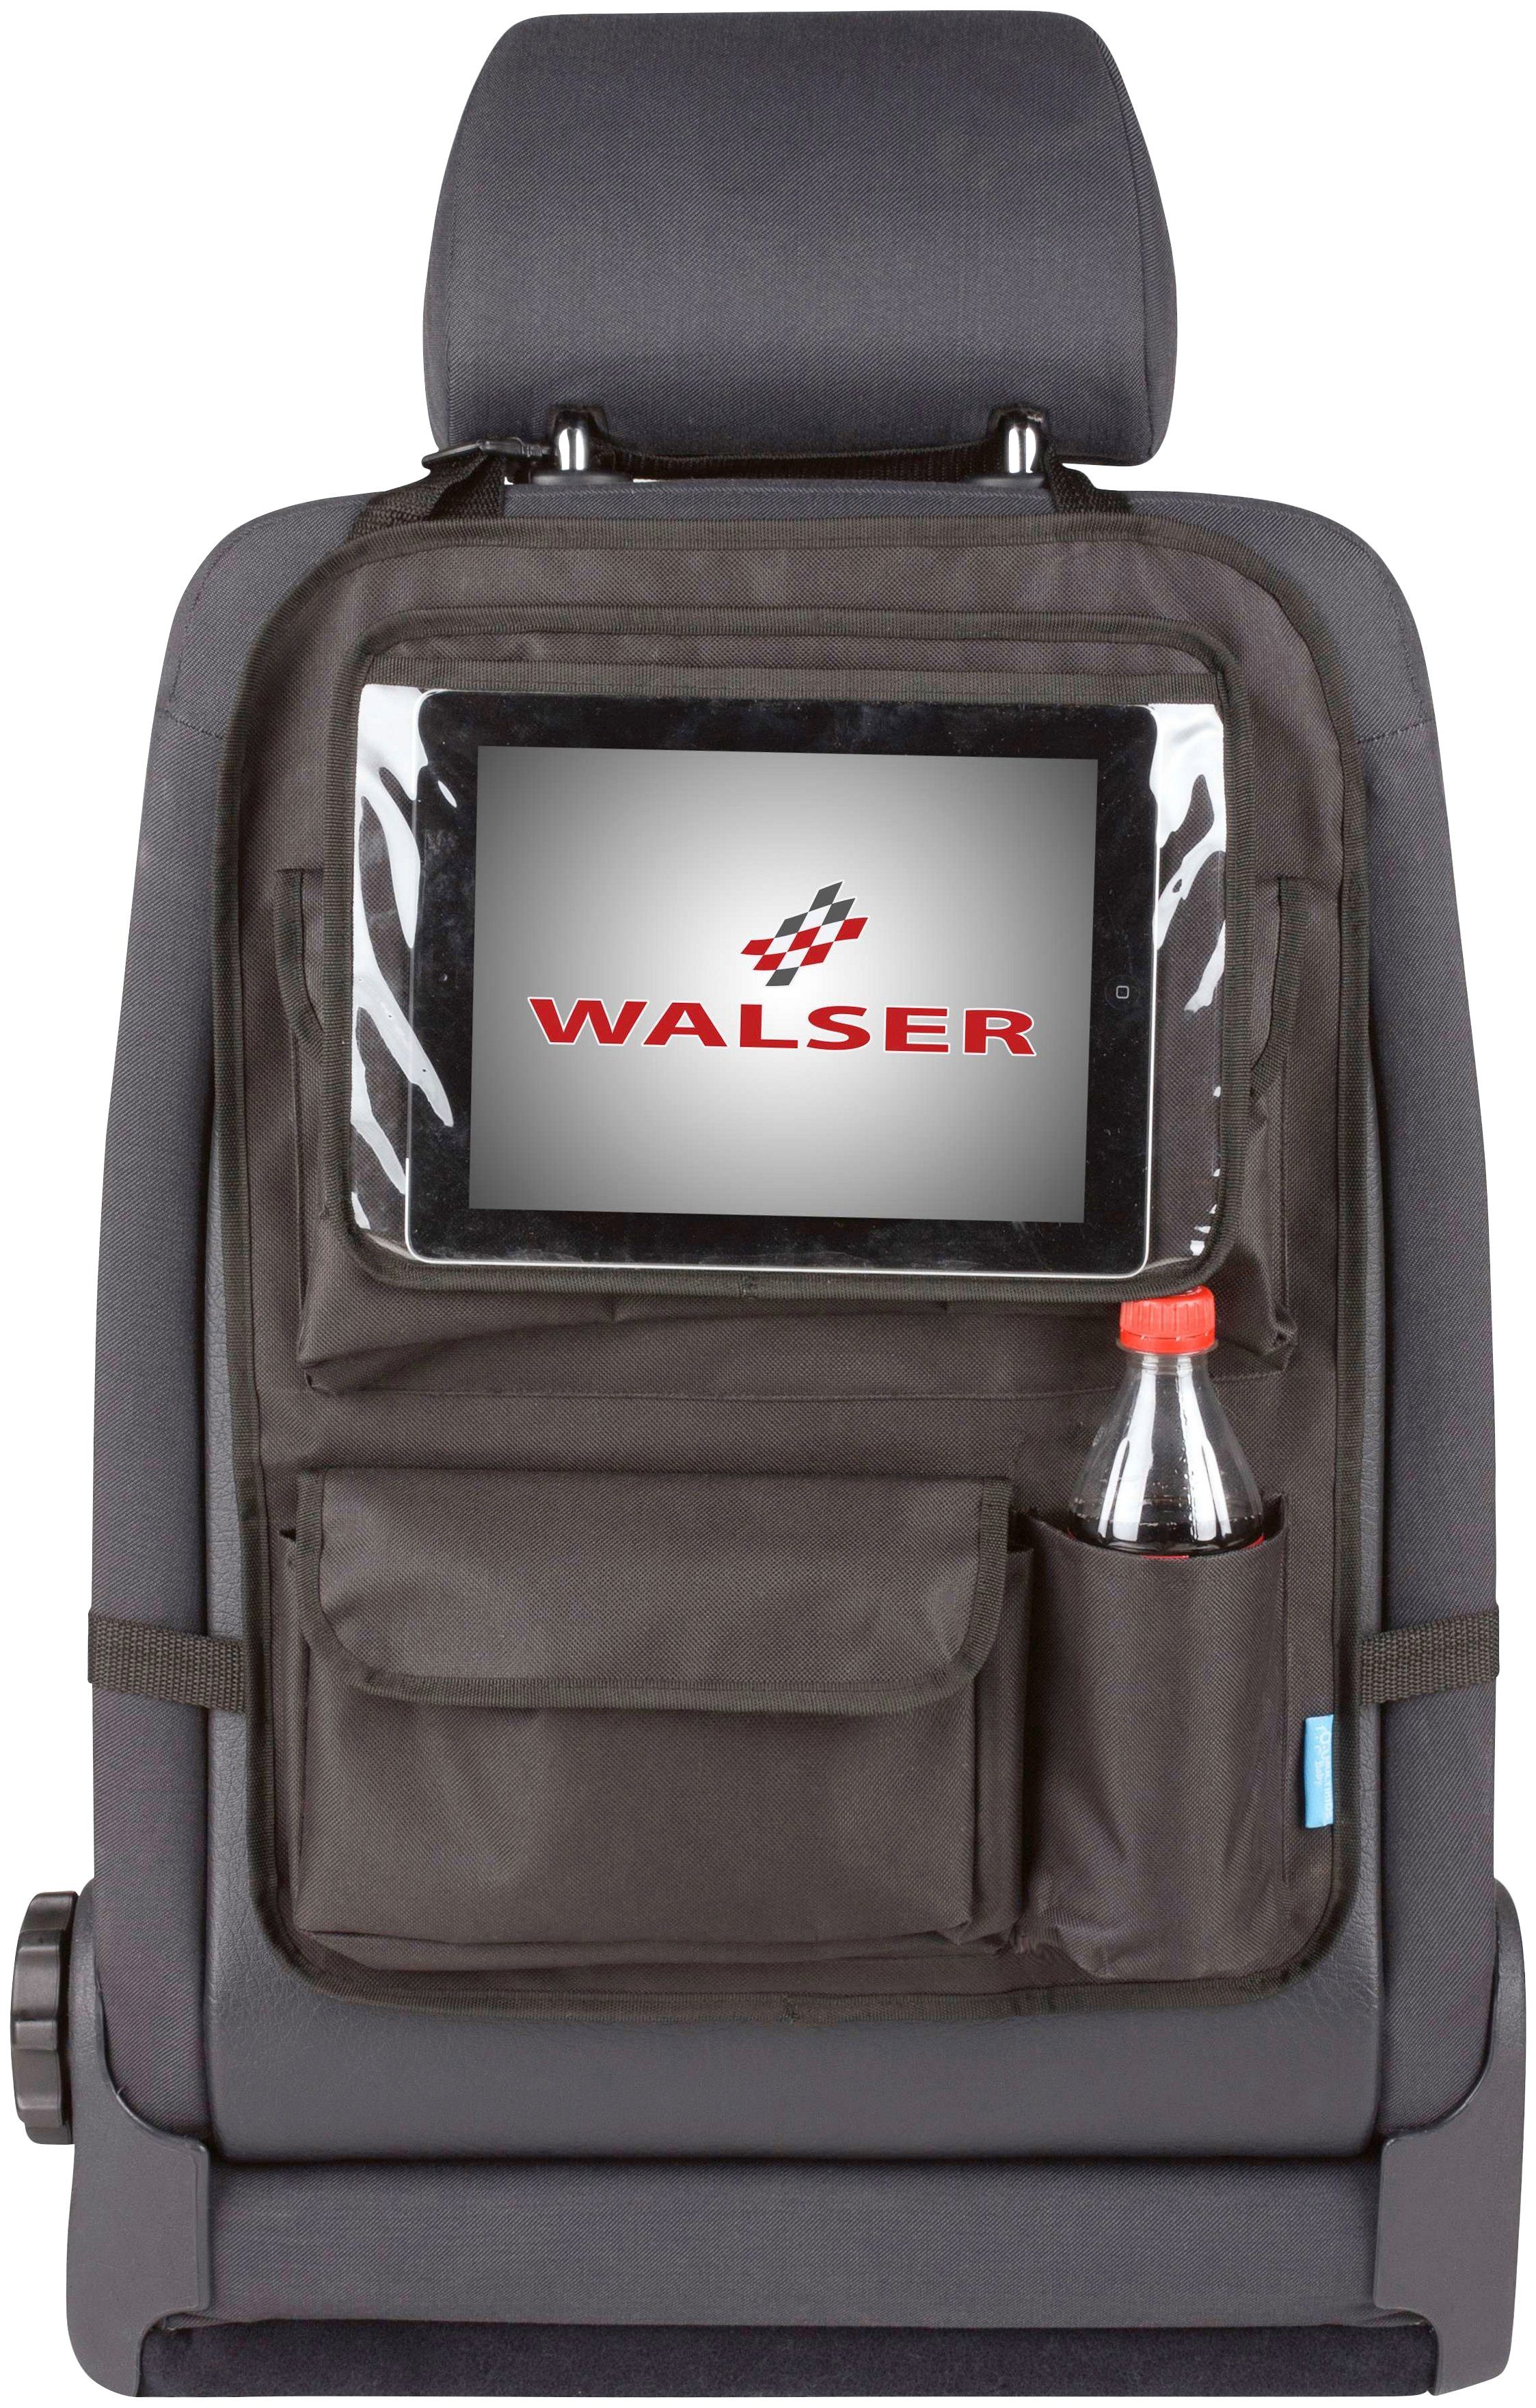 WALSER Rücksitzorganizer wasserabweisend Maxi